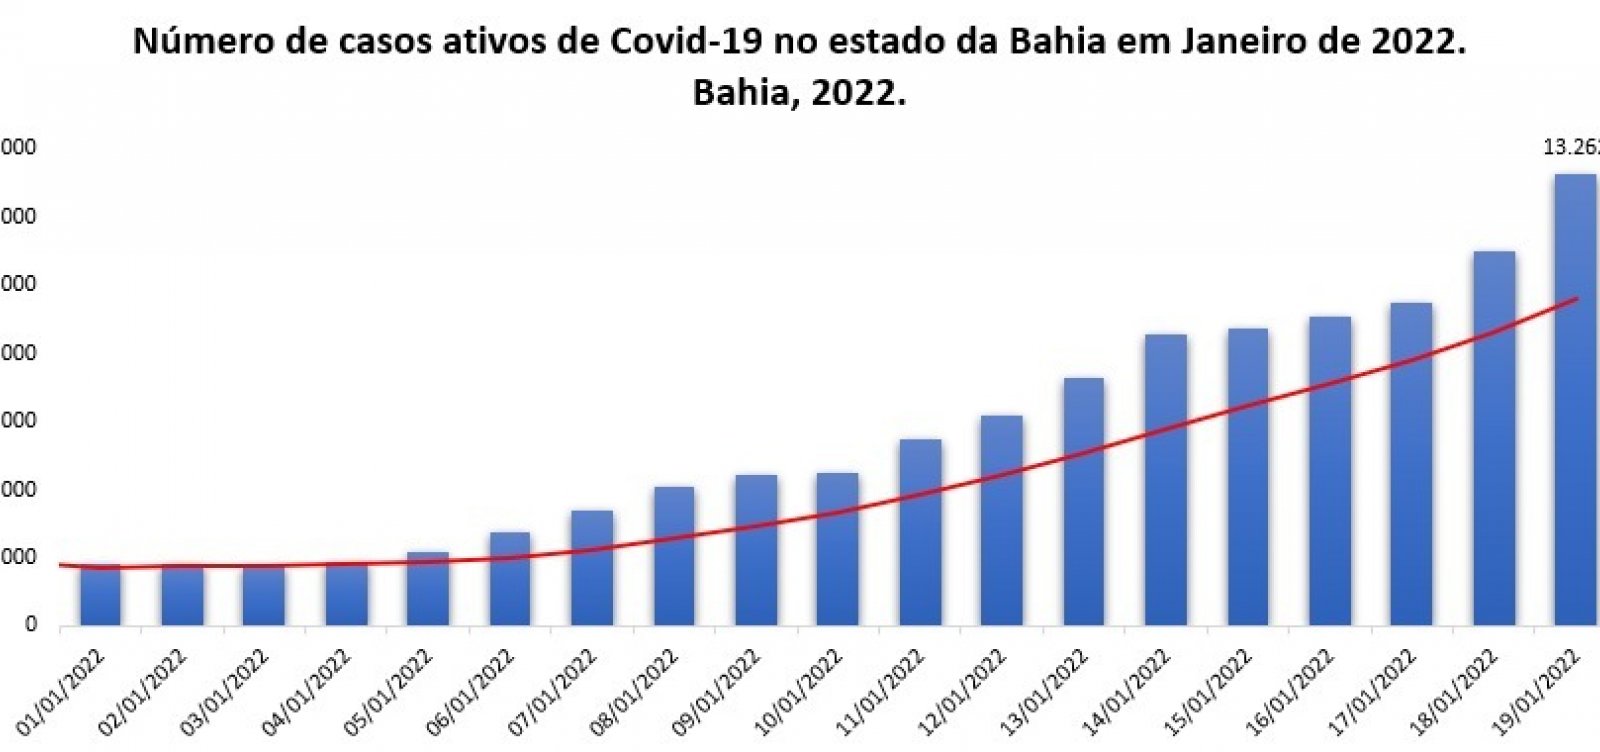 Em 19 dias, Bahia registra aumento de 625% nos casos ativos de Covid e ultrapassa 13 mil registros